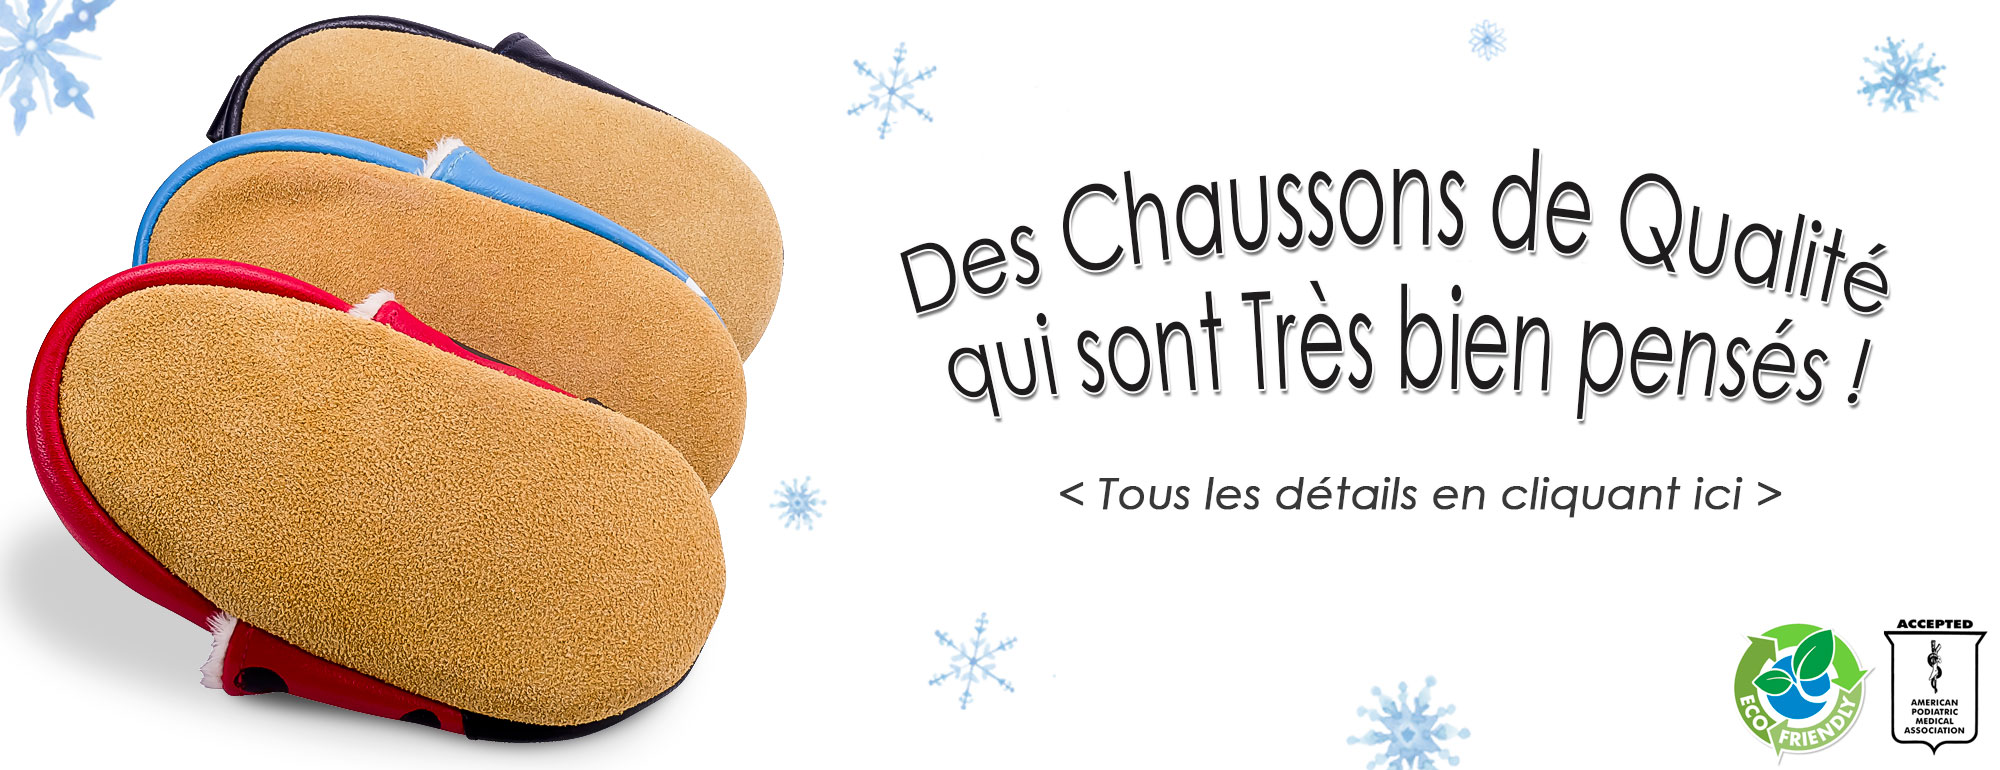 Chaussons bébé en cuir souple-Chaussons premiers pas- Chaussons made in  France-Vert d'eau – Julie et Gilles